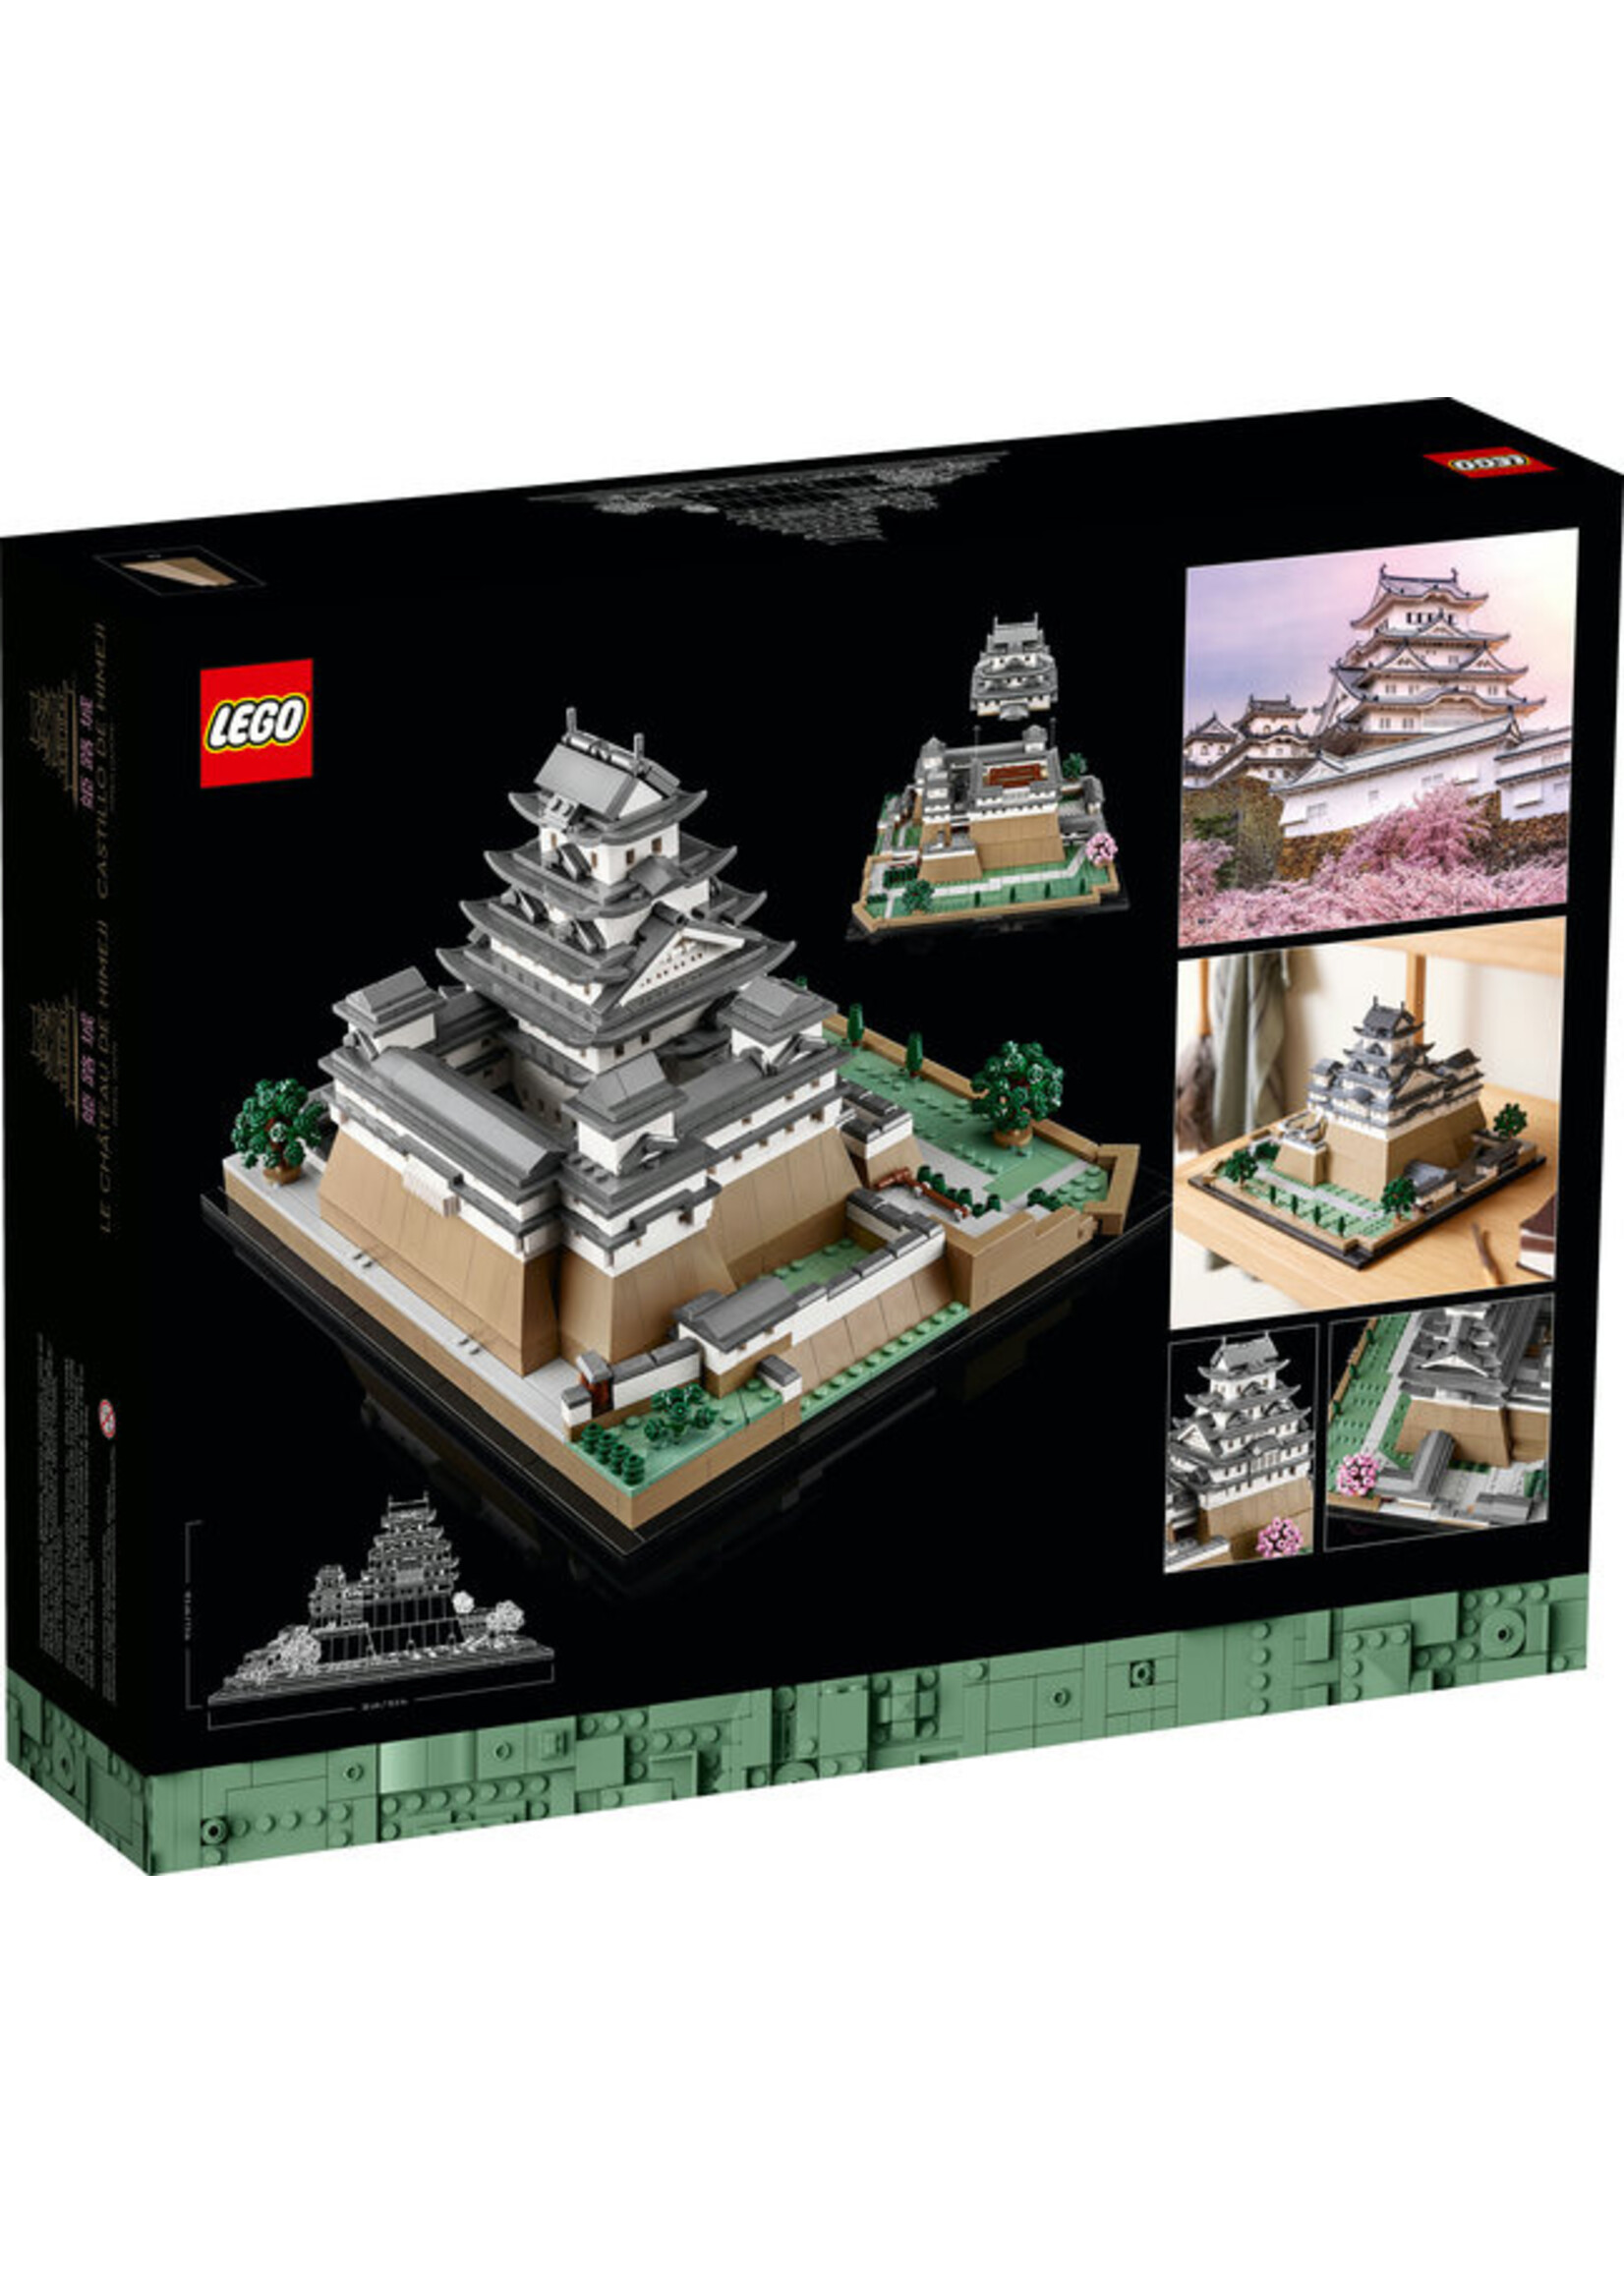 LEGO 21060 - Himeji Castle